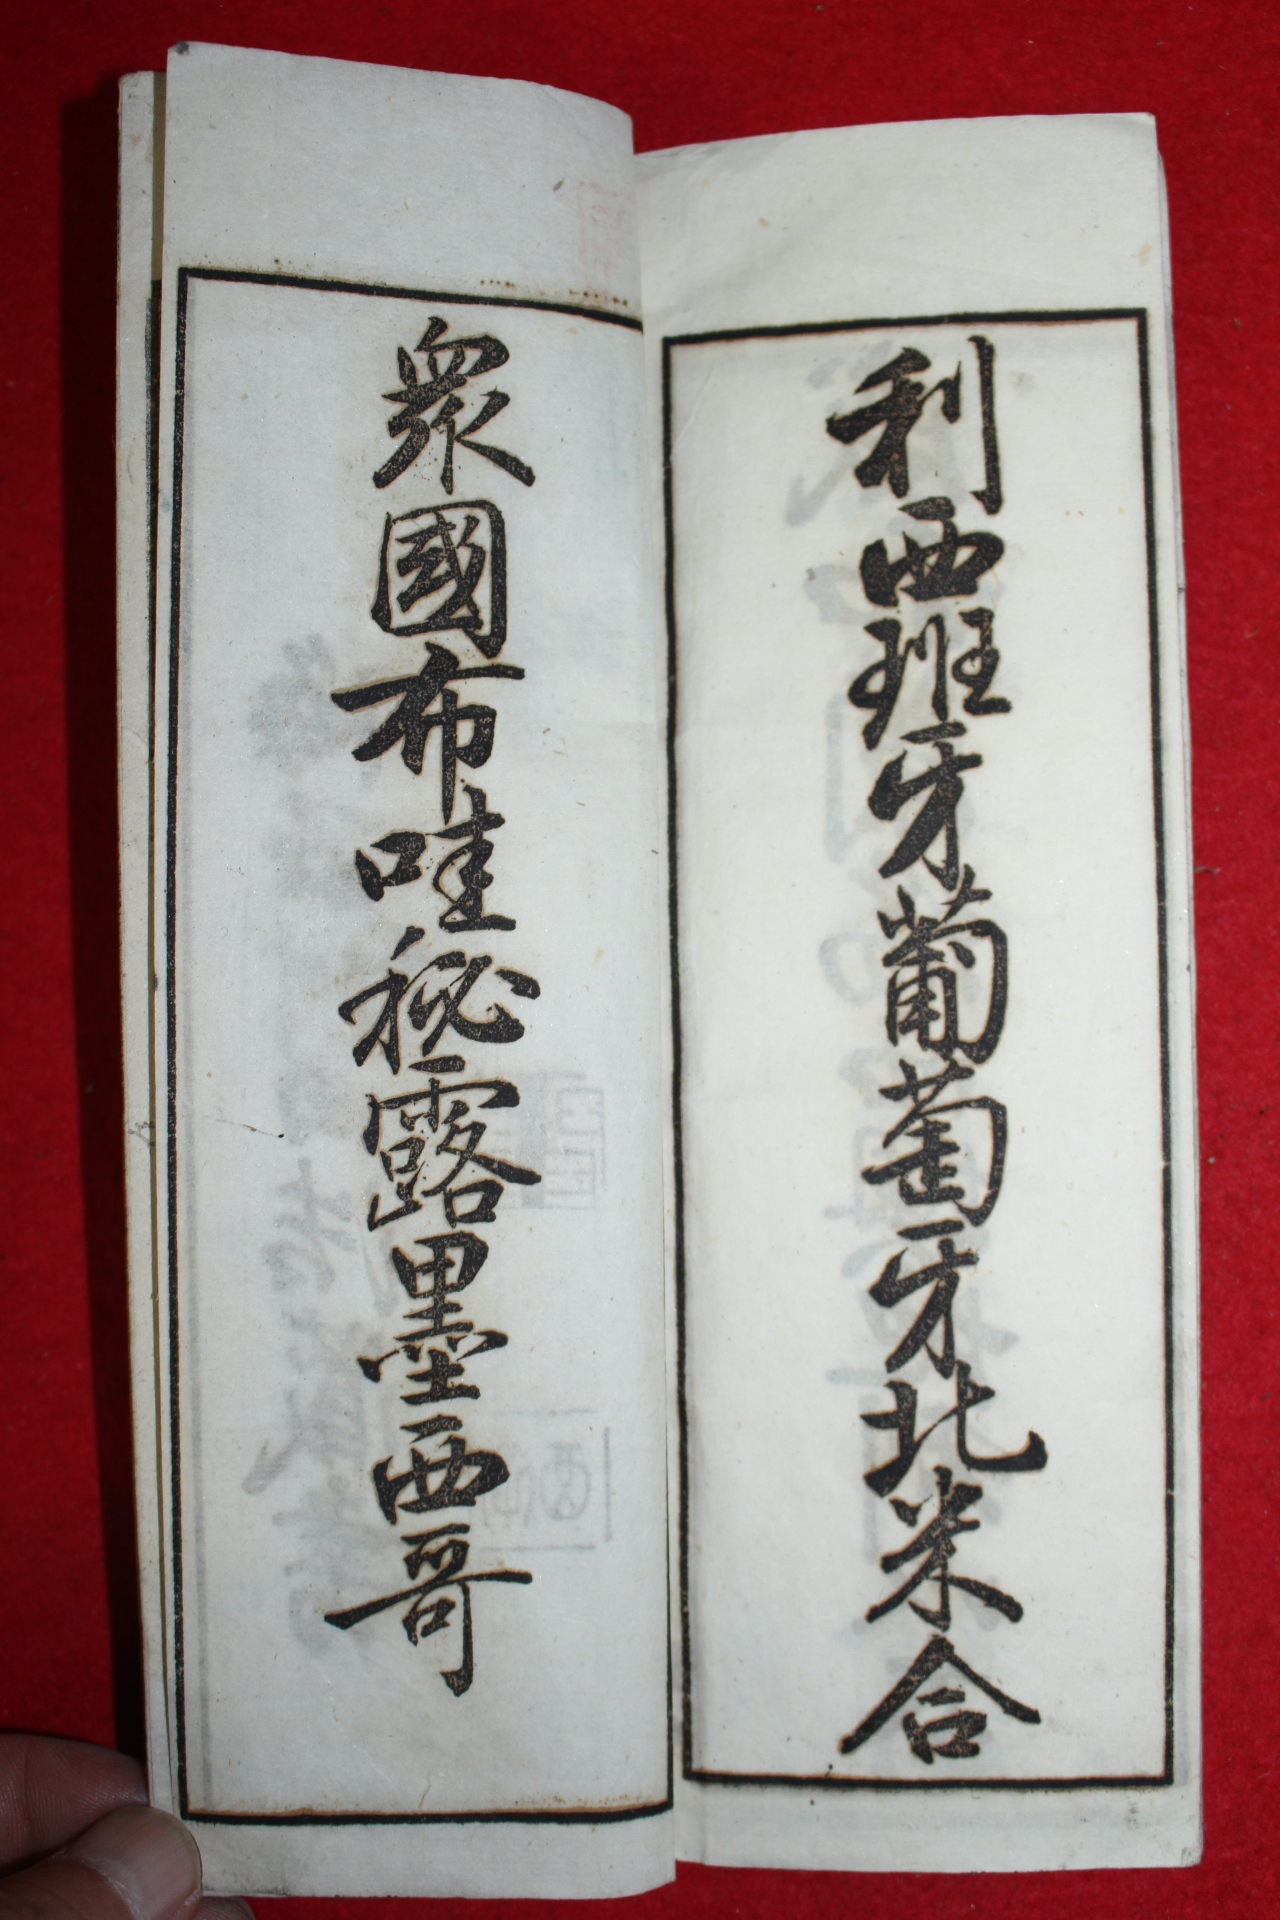 1893년(명치27년) 일본간행 명치습자첩 권5